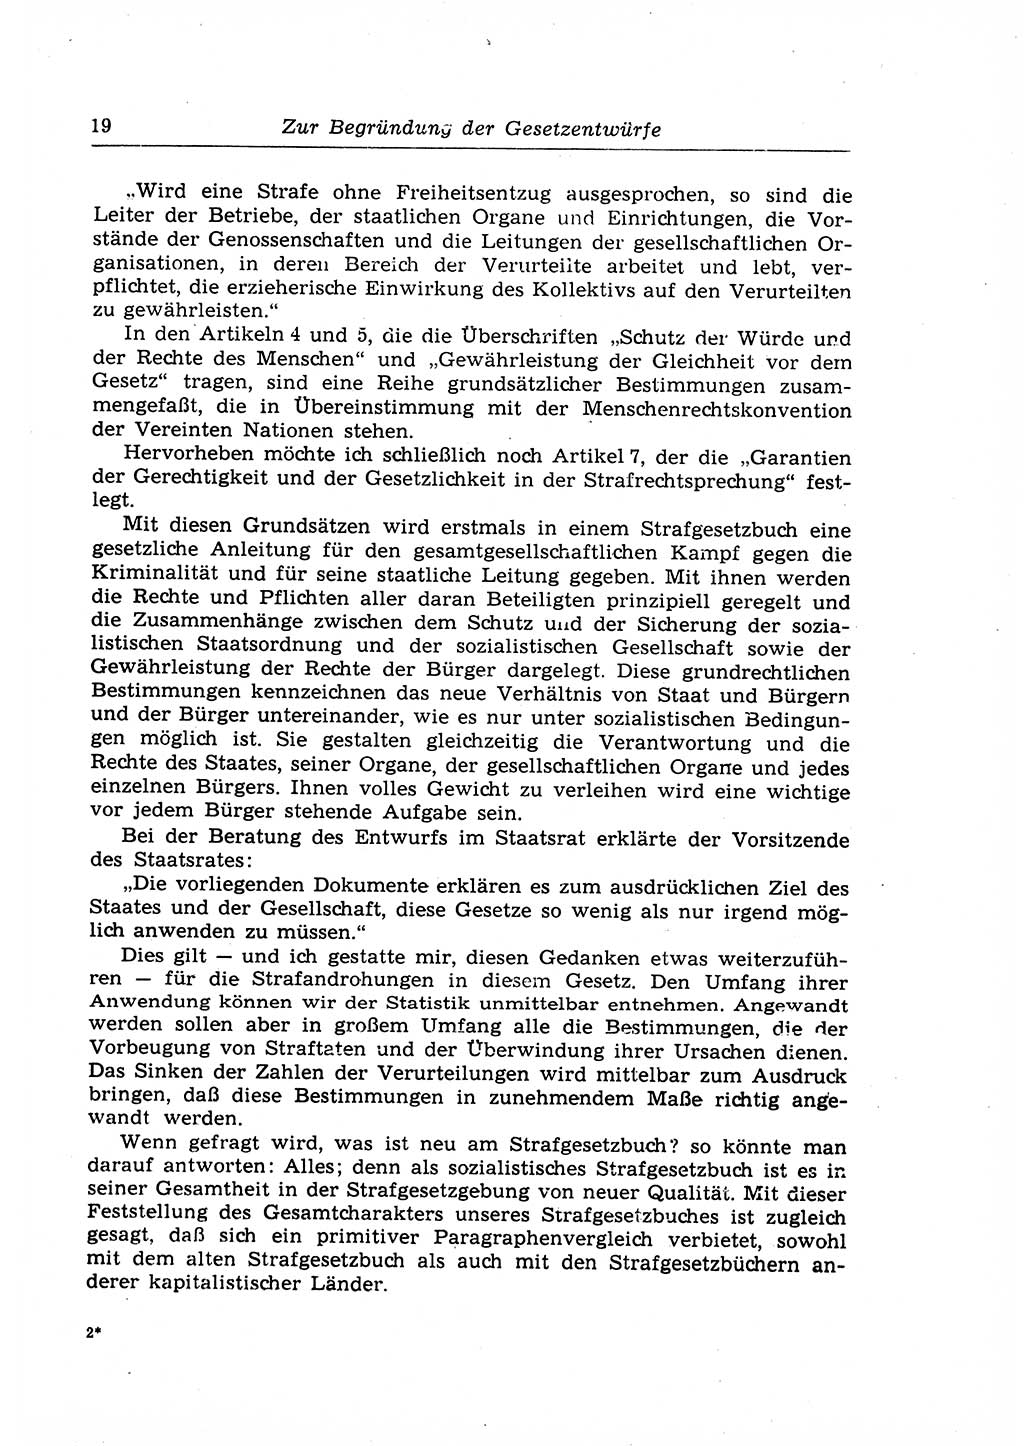 Strafrecht der Deutschen Demokratischen Republik (DDR), Lehrkommentar zum Strafgesetzbuch (StGB), Allgemeiner Teil 1969, Seite 19 (Strafr. DDR Lehrkomm. StGB AT 1969, S. 19)